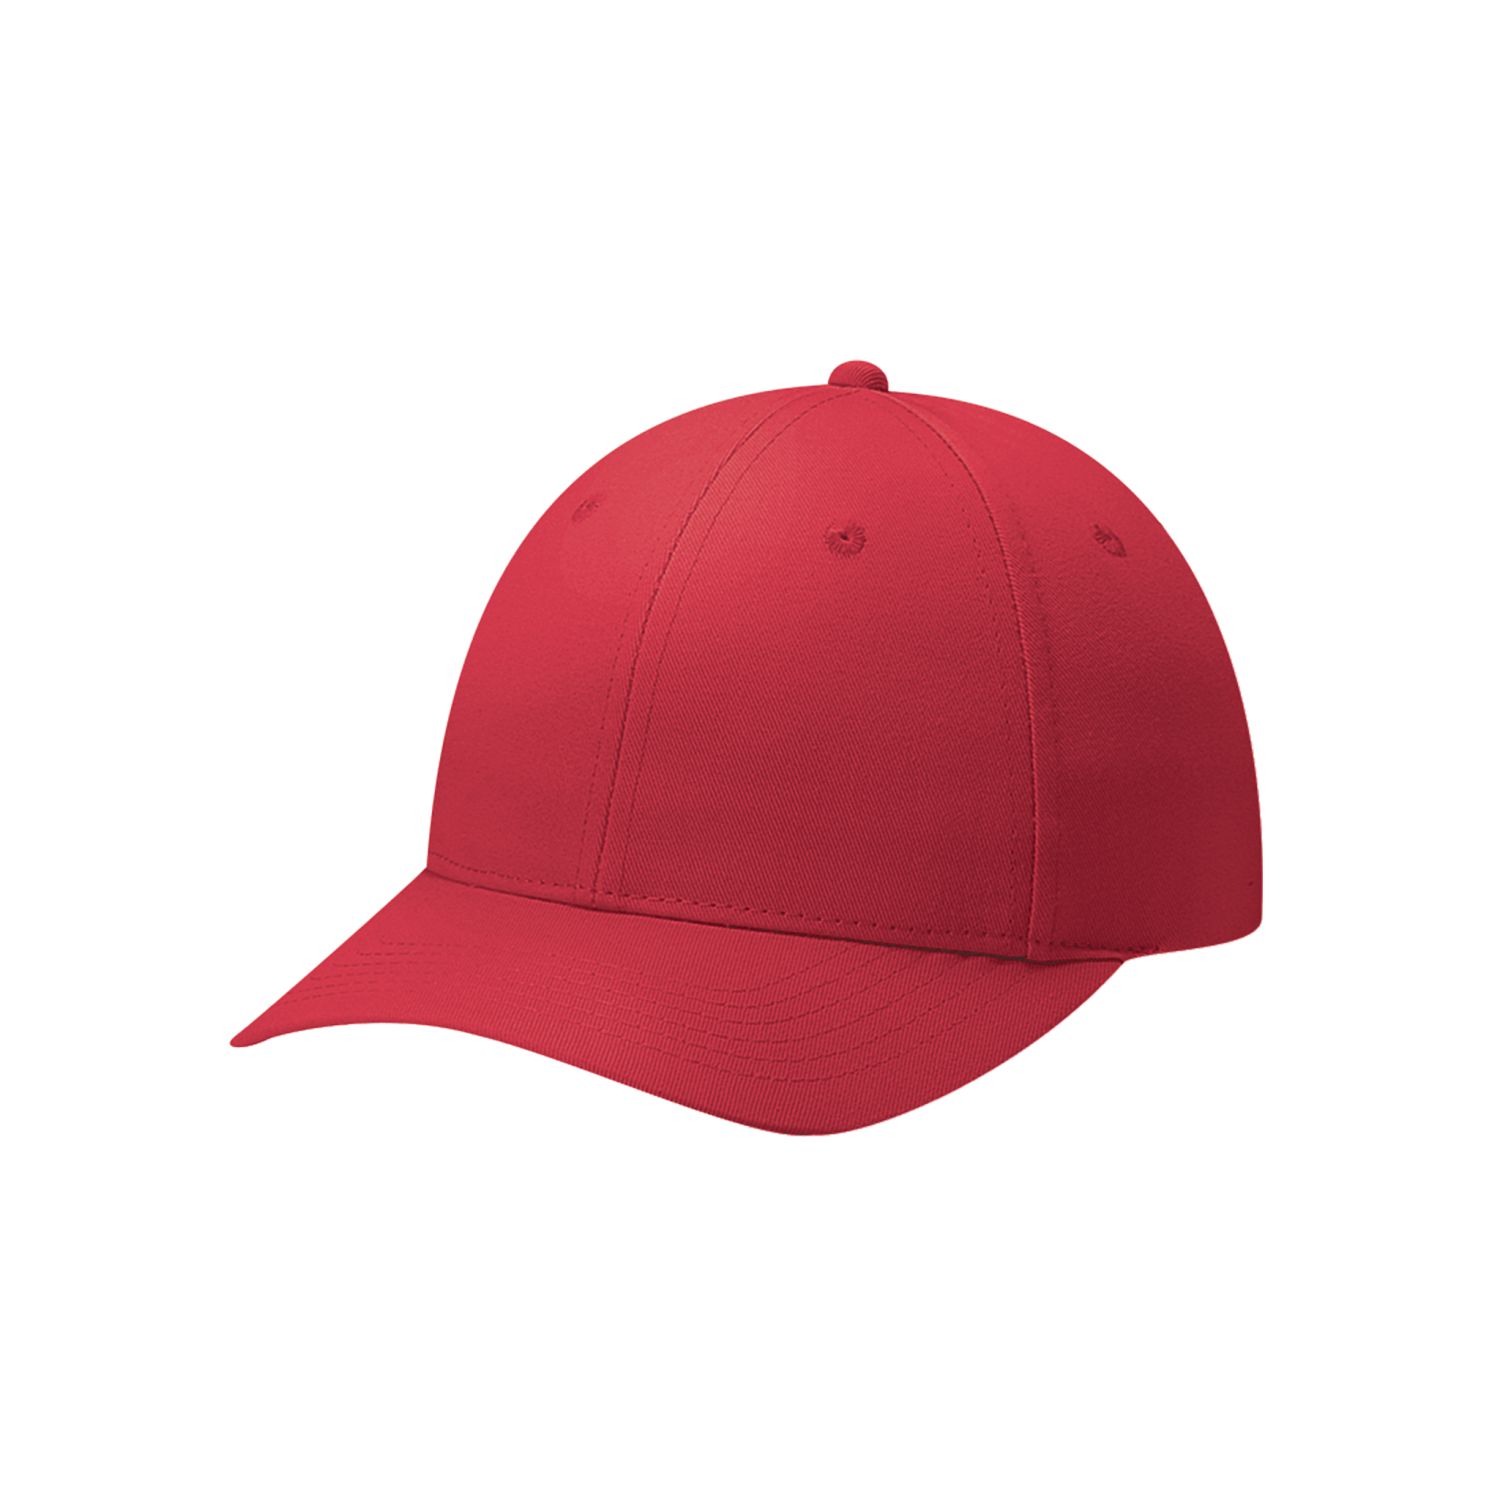 AJM 6-Panel Constructed Contour Hat #6J400M Red